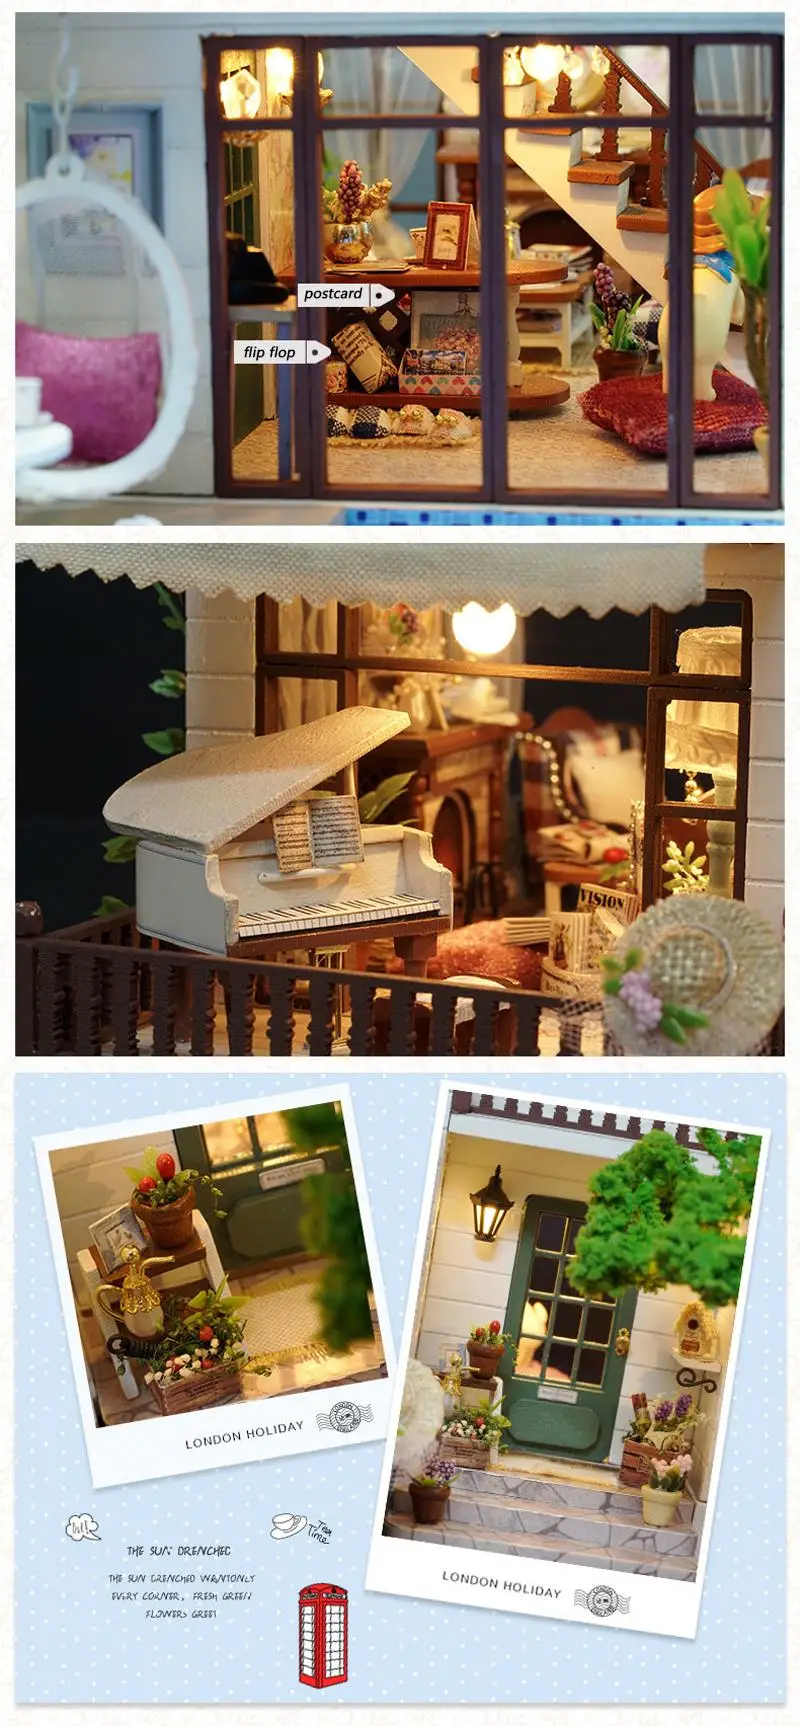 DIY кукольный домик Миниатюрный Кукольный дом мебель 3D деревянная ручная головоломка игрушки для детей подарок ЛОНДОН праздник A039# E